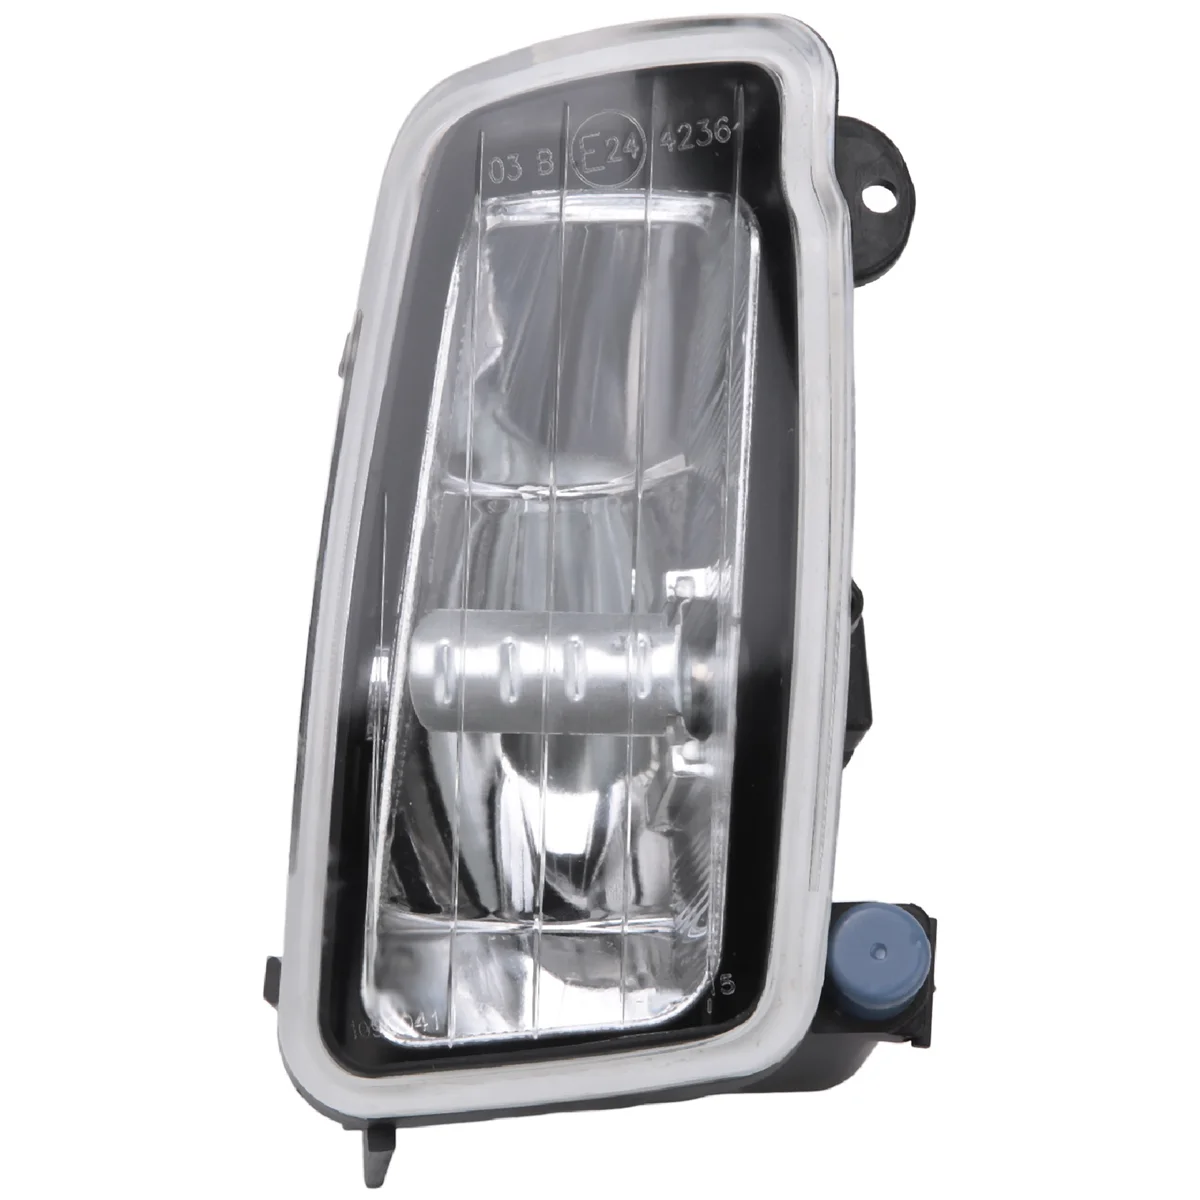 

Front Right Fog Lamp Headlight Daytime Running Lights Corner Light for Ford Focus-RS 2015-2018